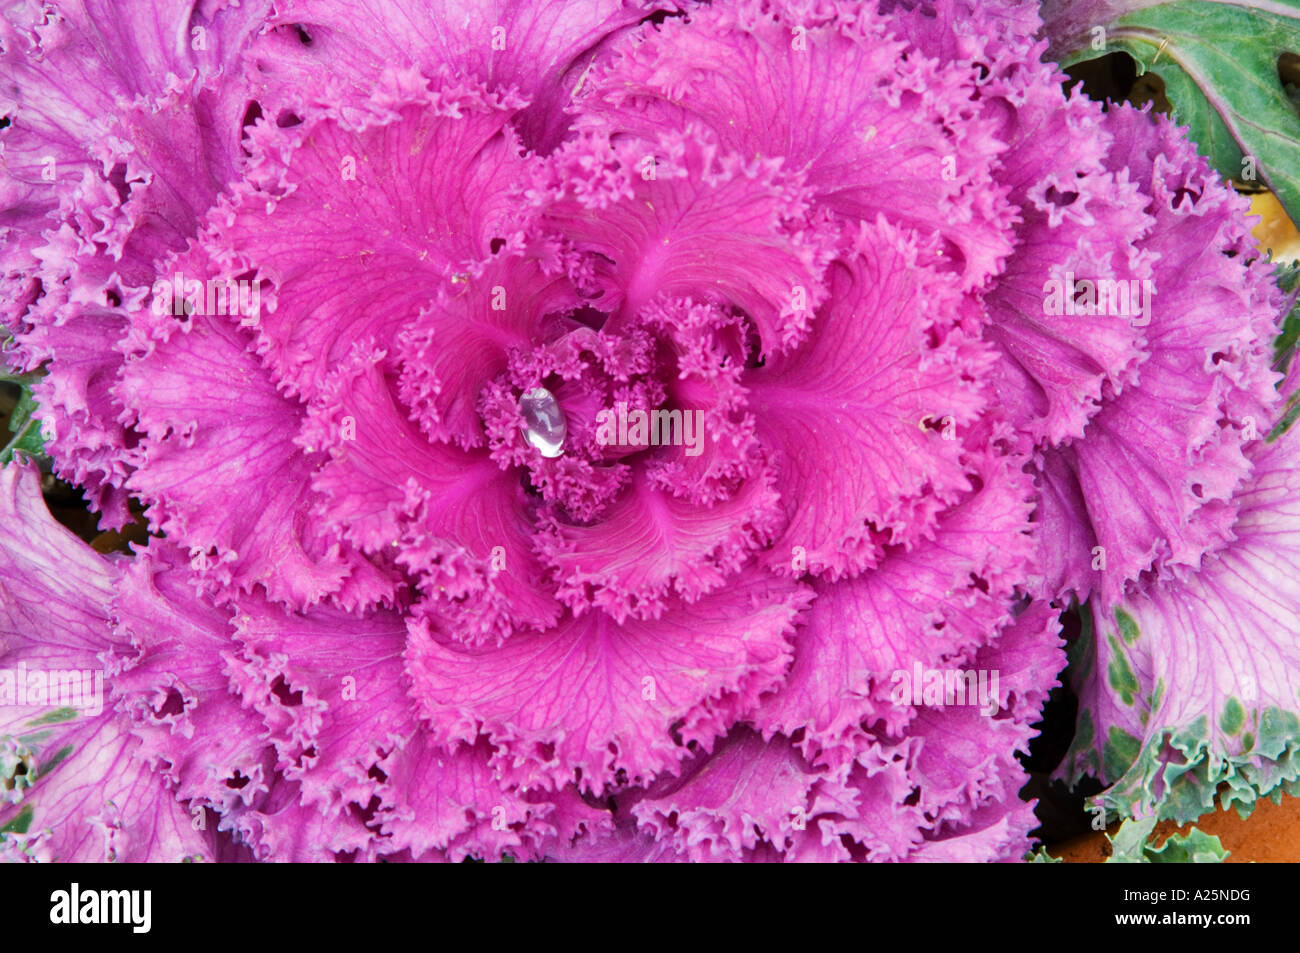 Kohl Blume künstlerische Abbildung Grafikfilter Spezialeffekt Konzept Natur recht abstrakt verschiedene Detail hautnah Stockfoto